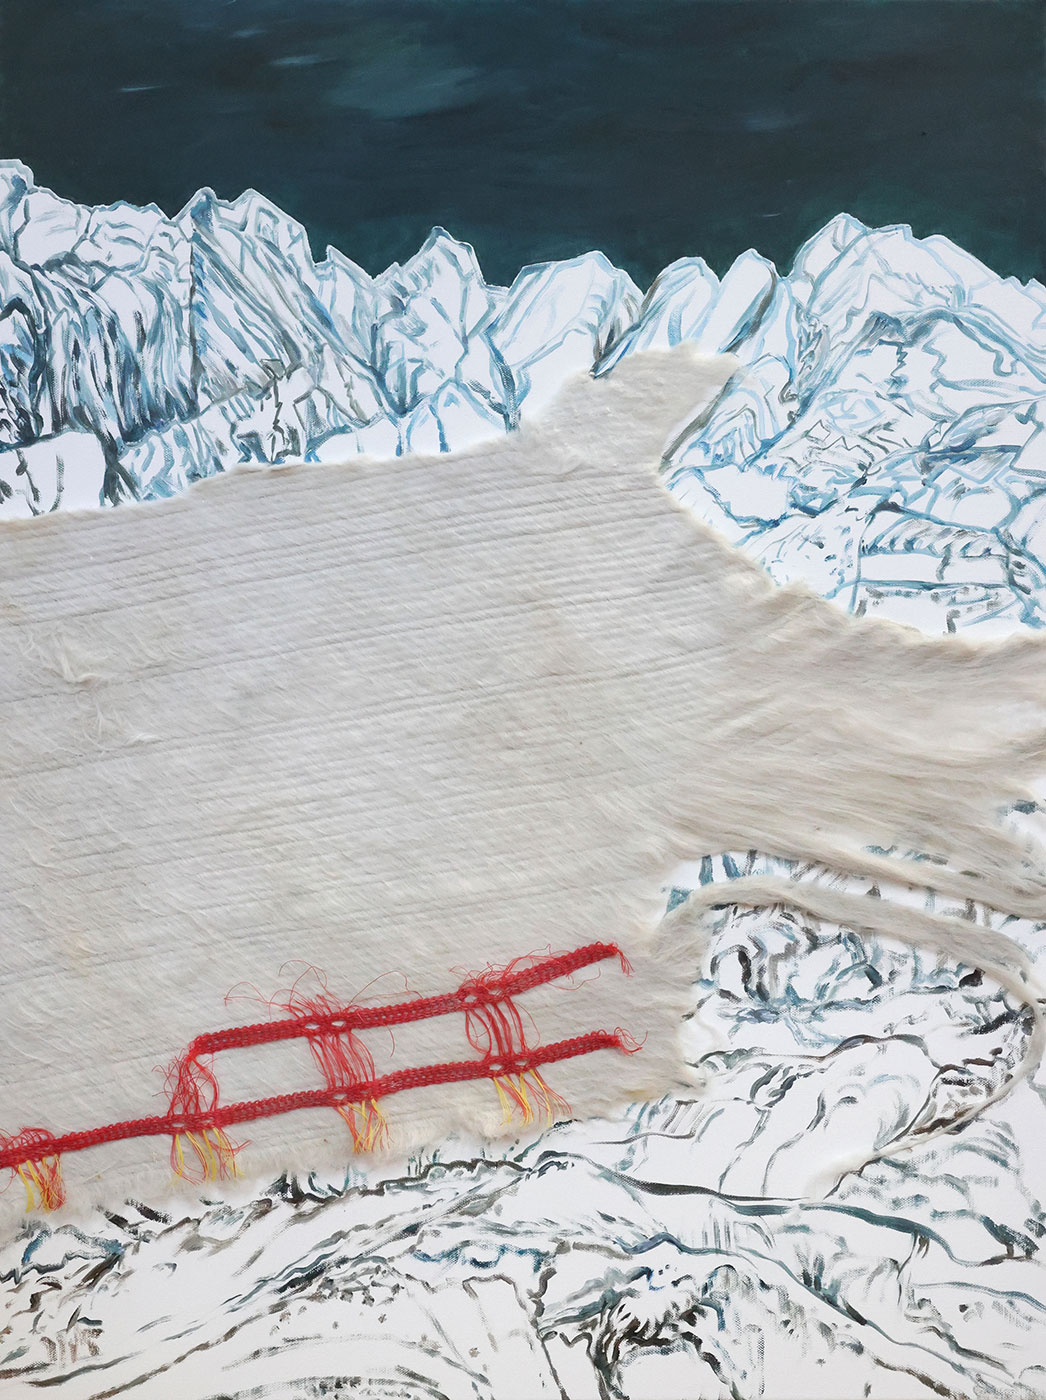 Skizzenhafte Gletscherlandschaft mit Snow-Farming-Vlies